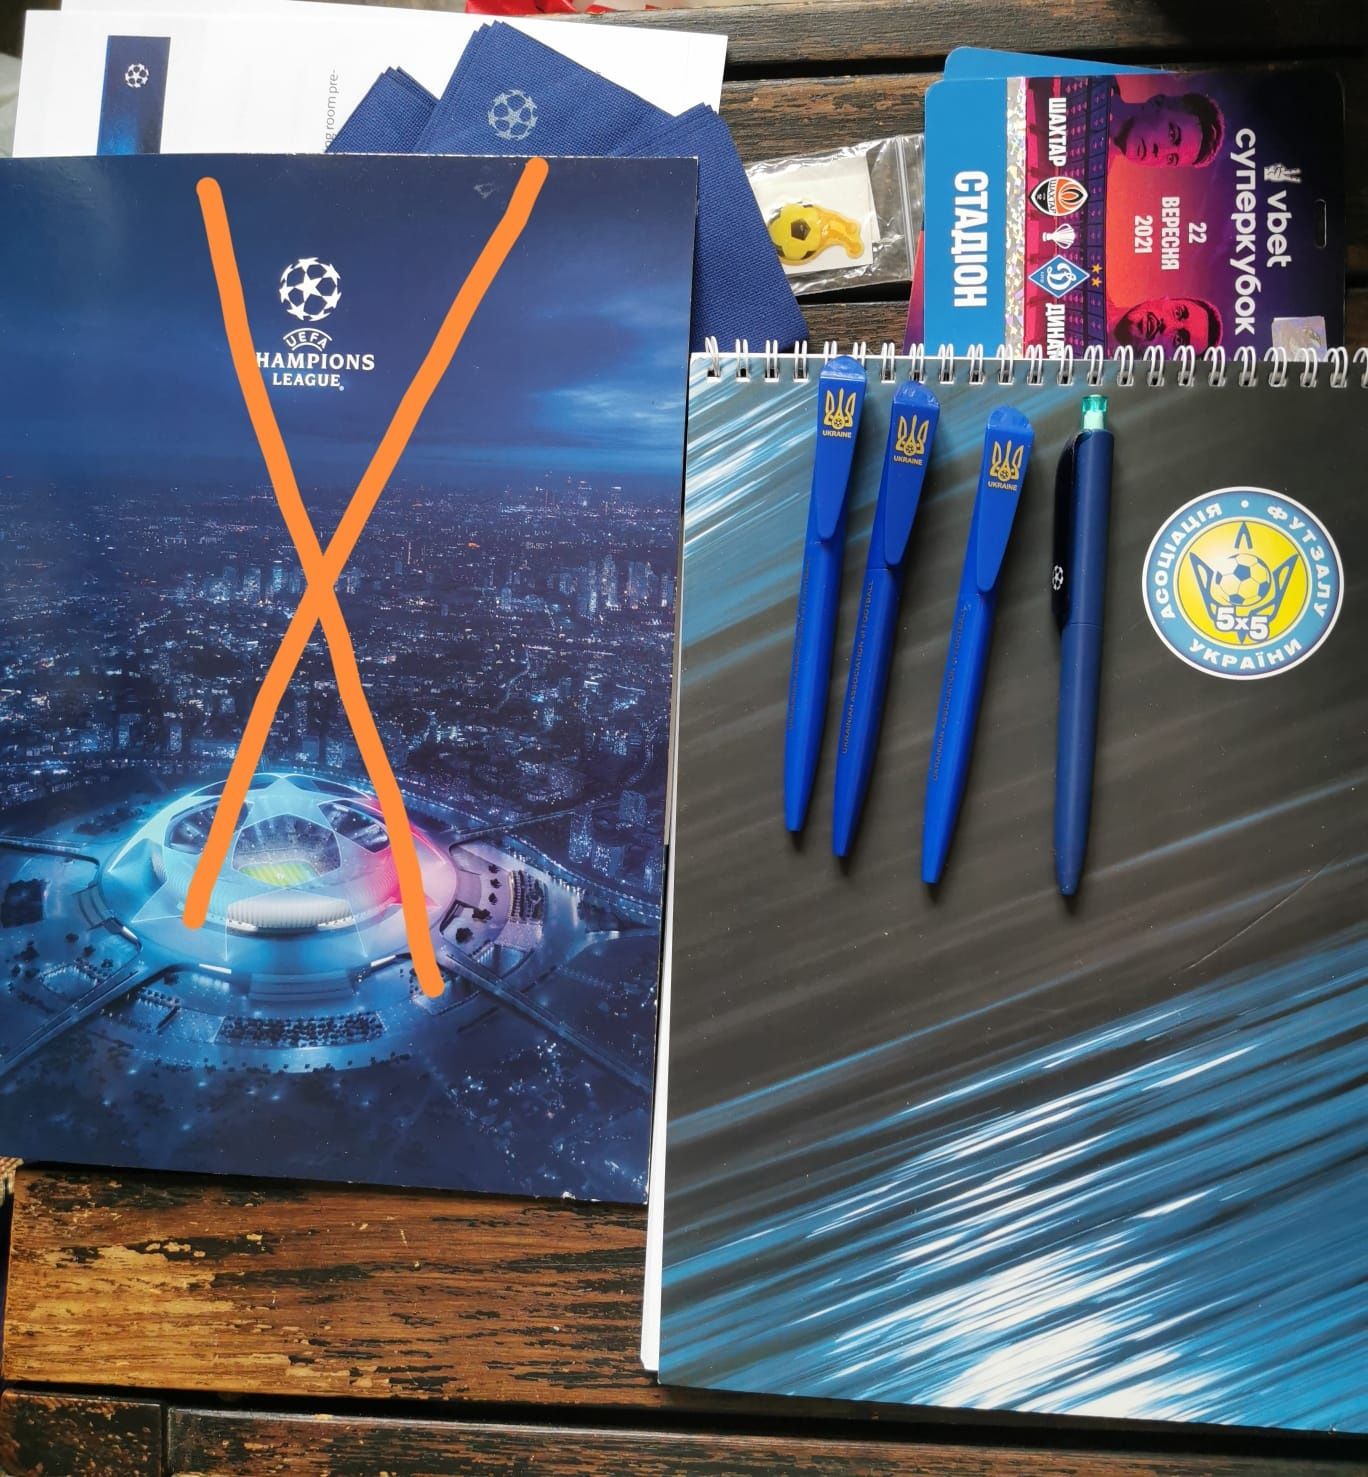 Ланъярд UEFA Final Kyiv 2018 и другие атрибуты